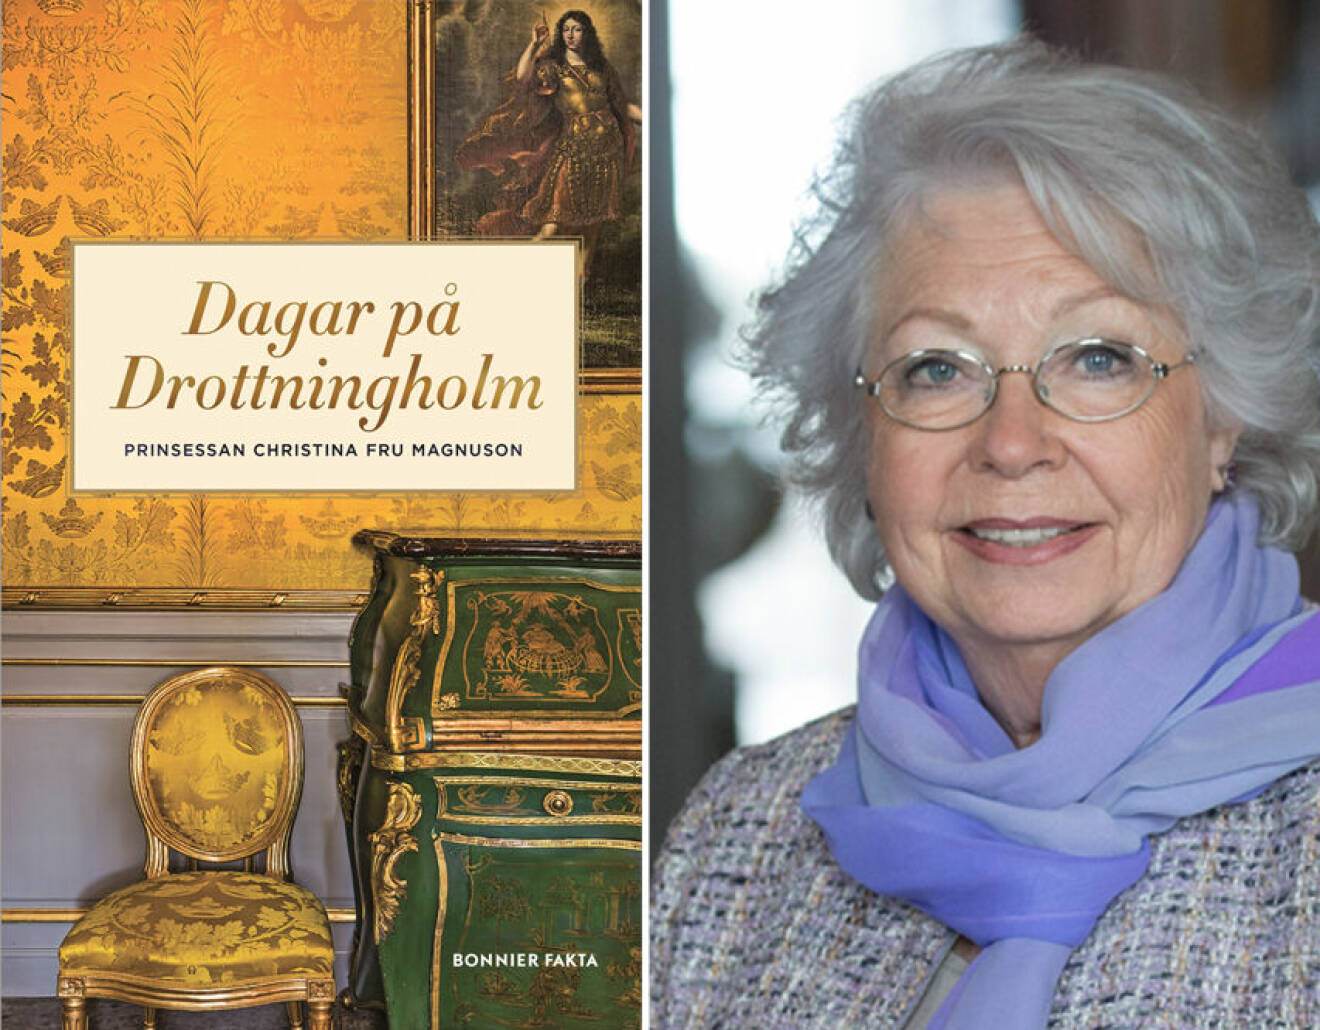 Prinsessan Christinas bok Dagar på Drottningholm (Bonnier Fakta 2016)